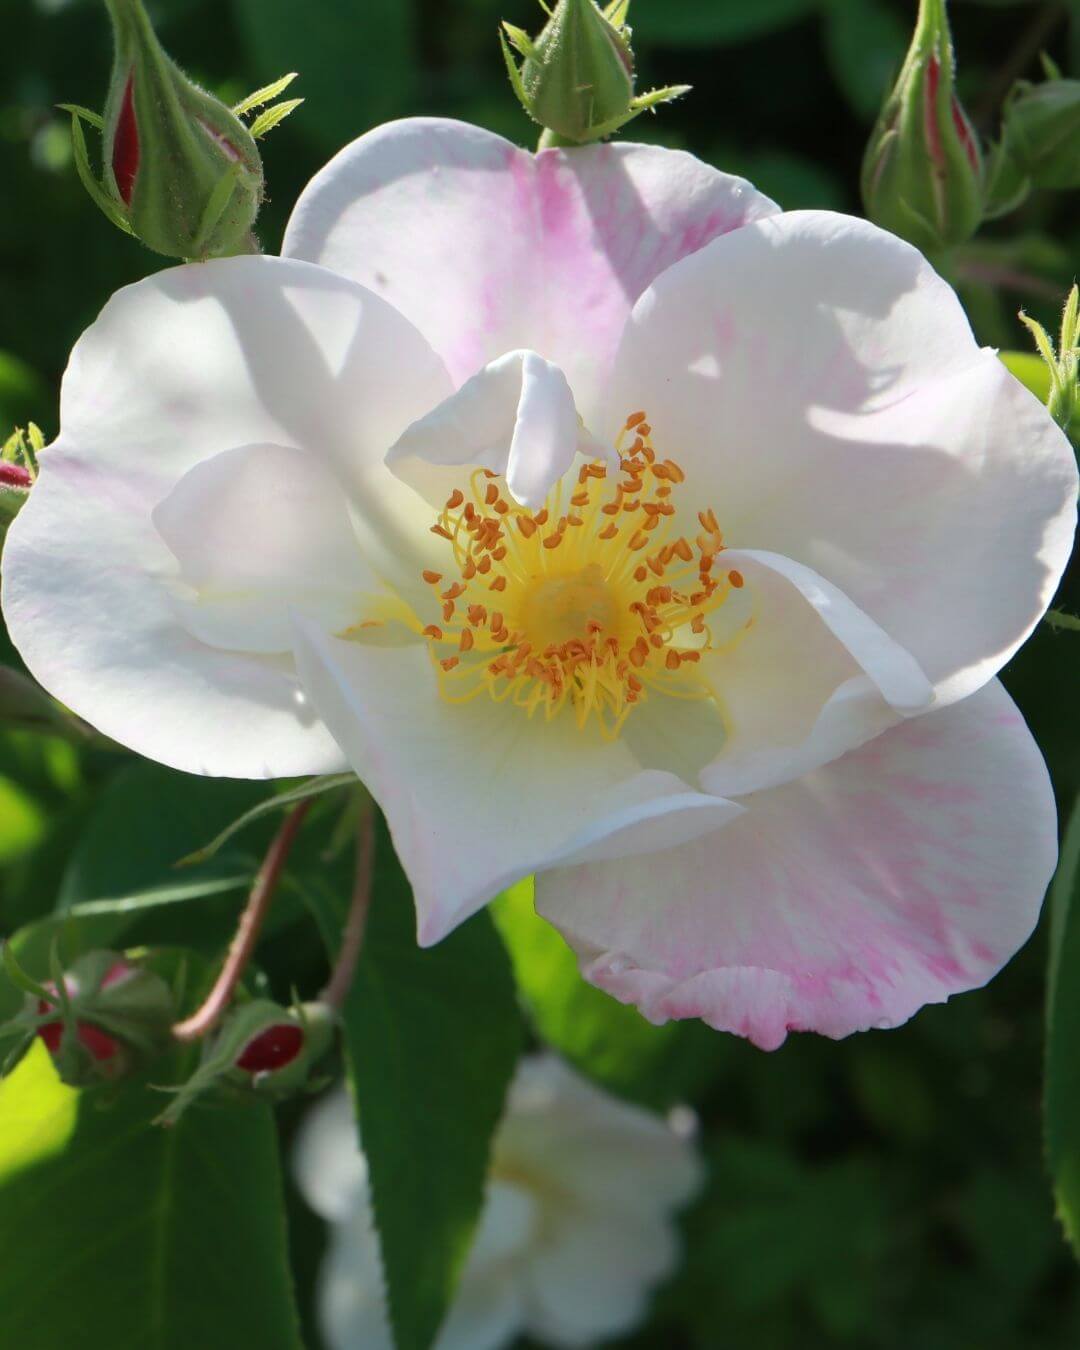 Weiße und rosafarbene Rose Dupontii inspiriert die botanischen Schmuckdesigner Véro und Reinhard Hampel